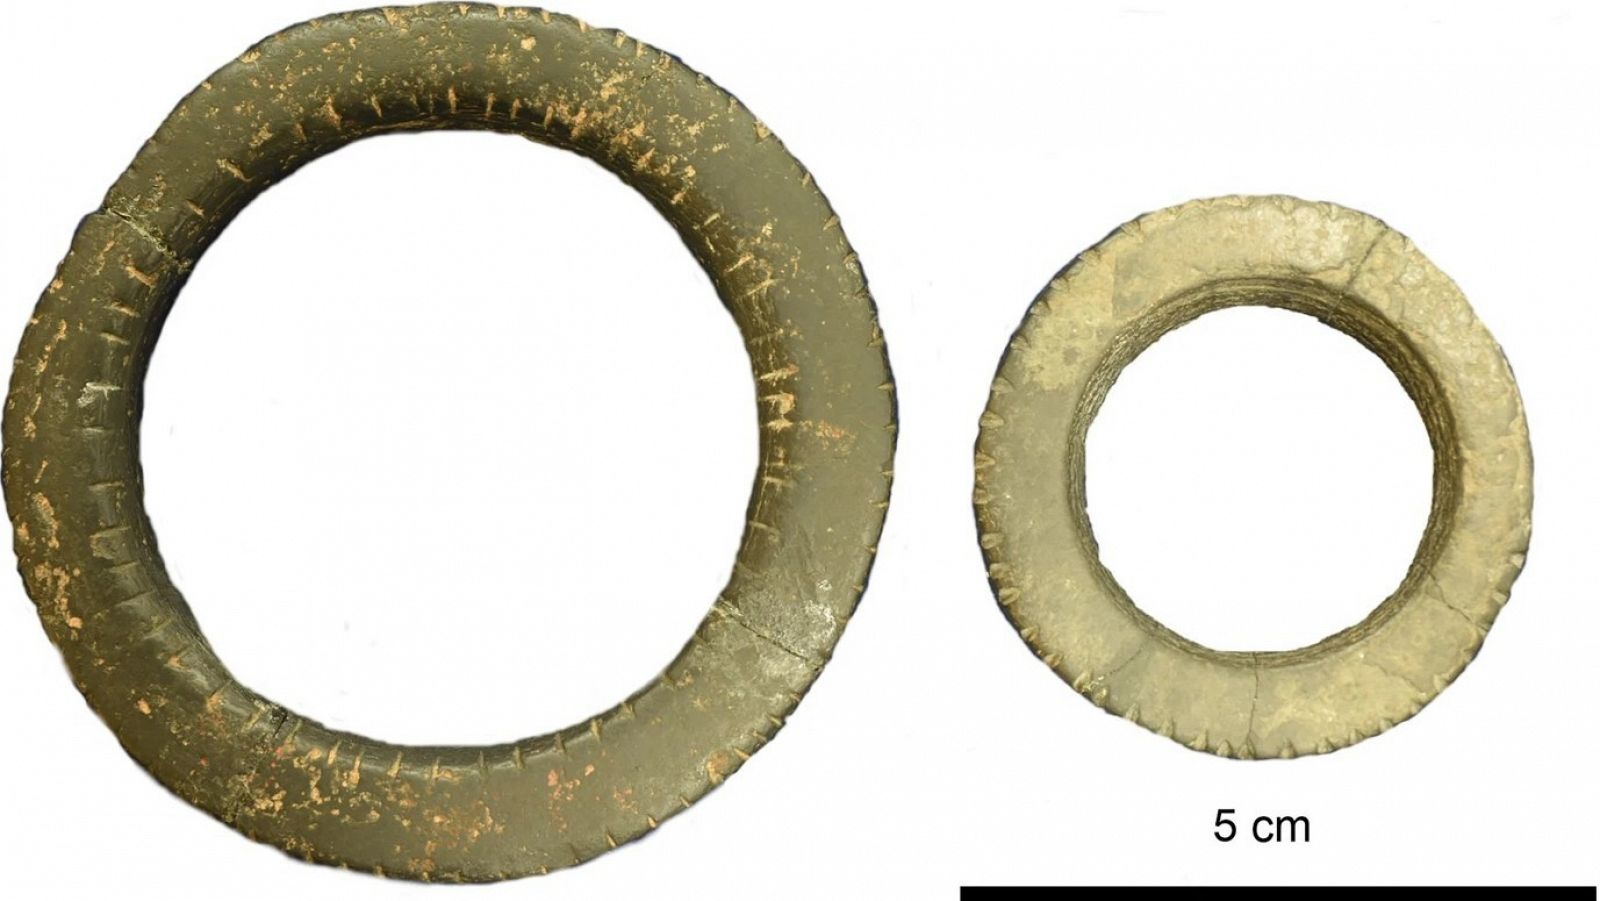 Anillos ornamentales de la Edad de Piedra formados por dos fragmentos diferentes